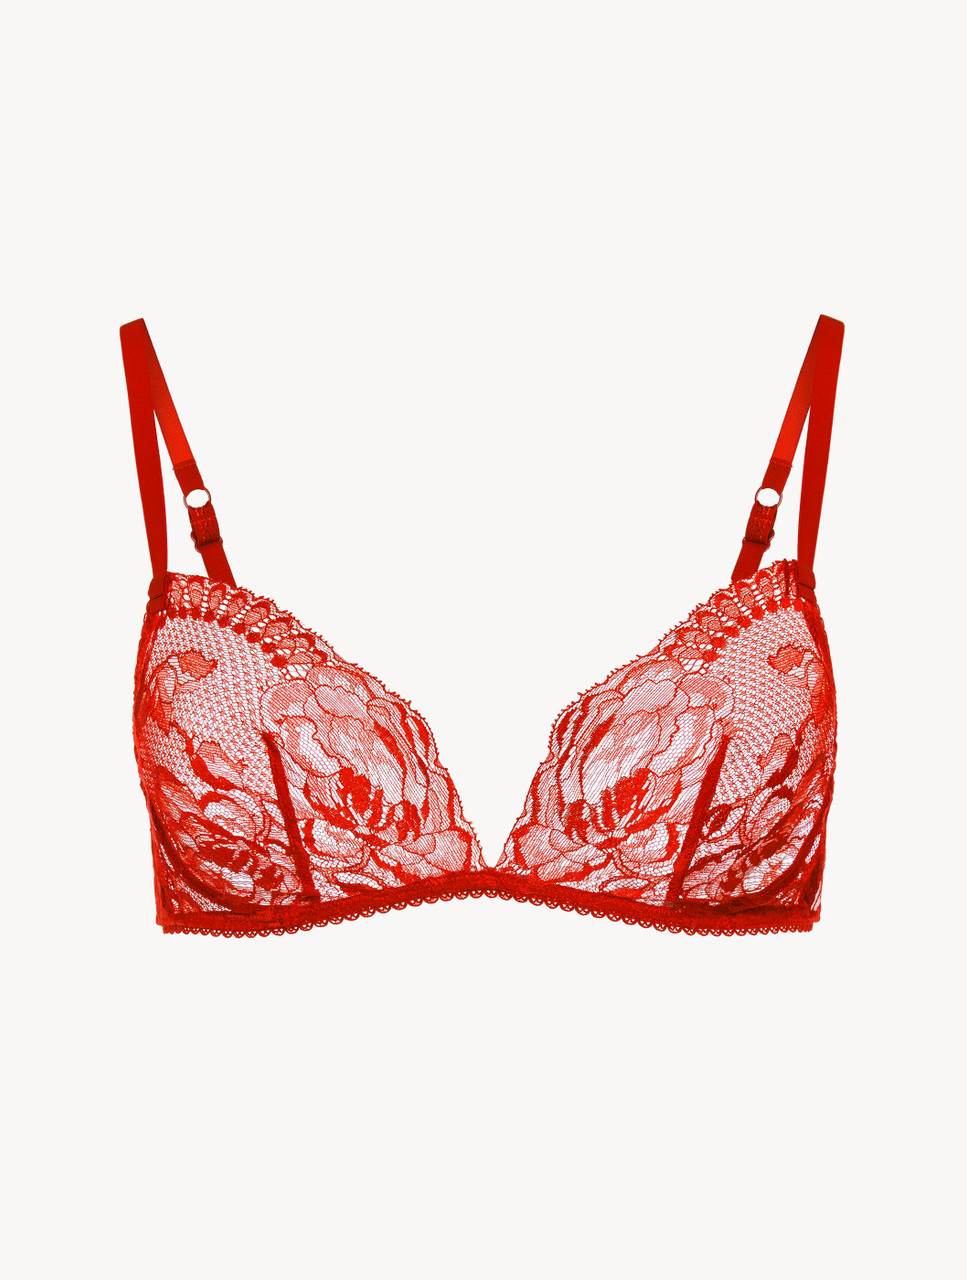 Red lace non-wired bra - La Perla - Russia